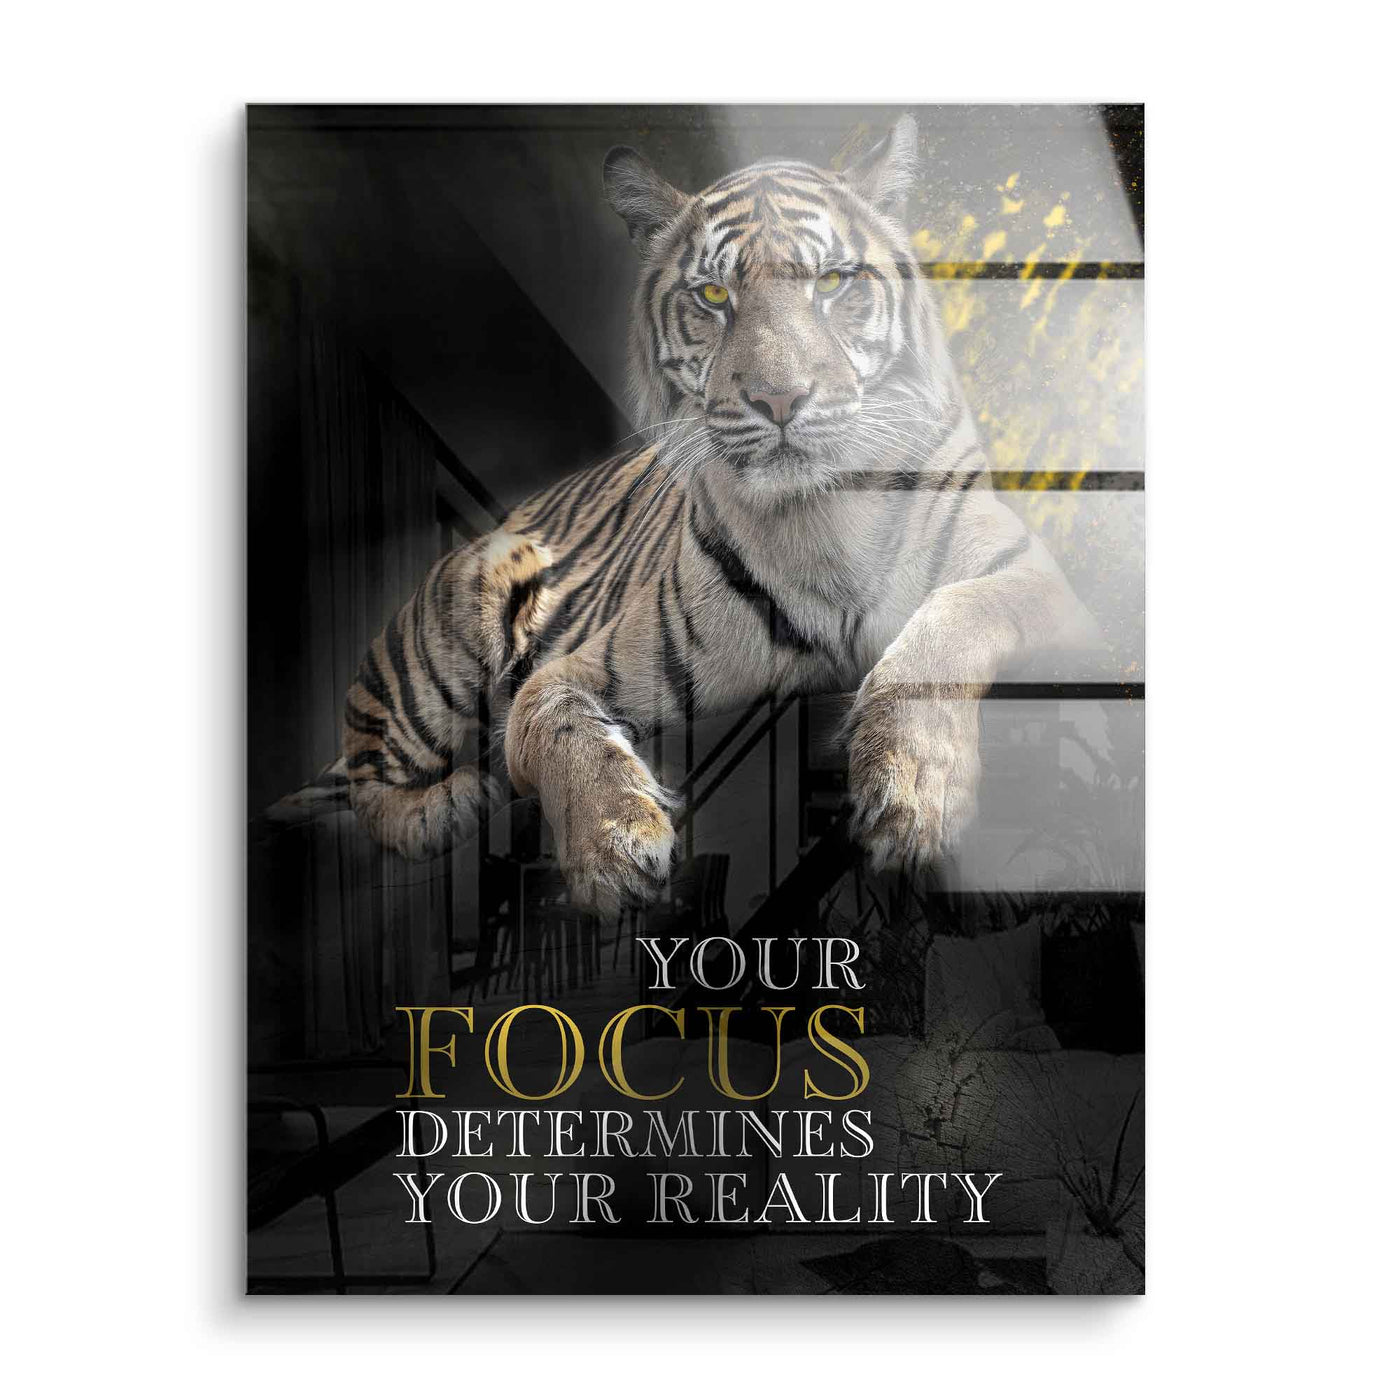 Focus détermine la réalité